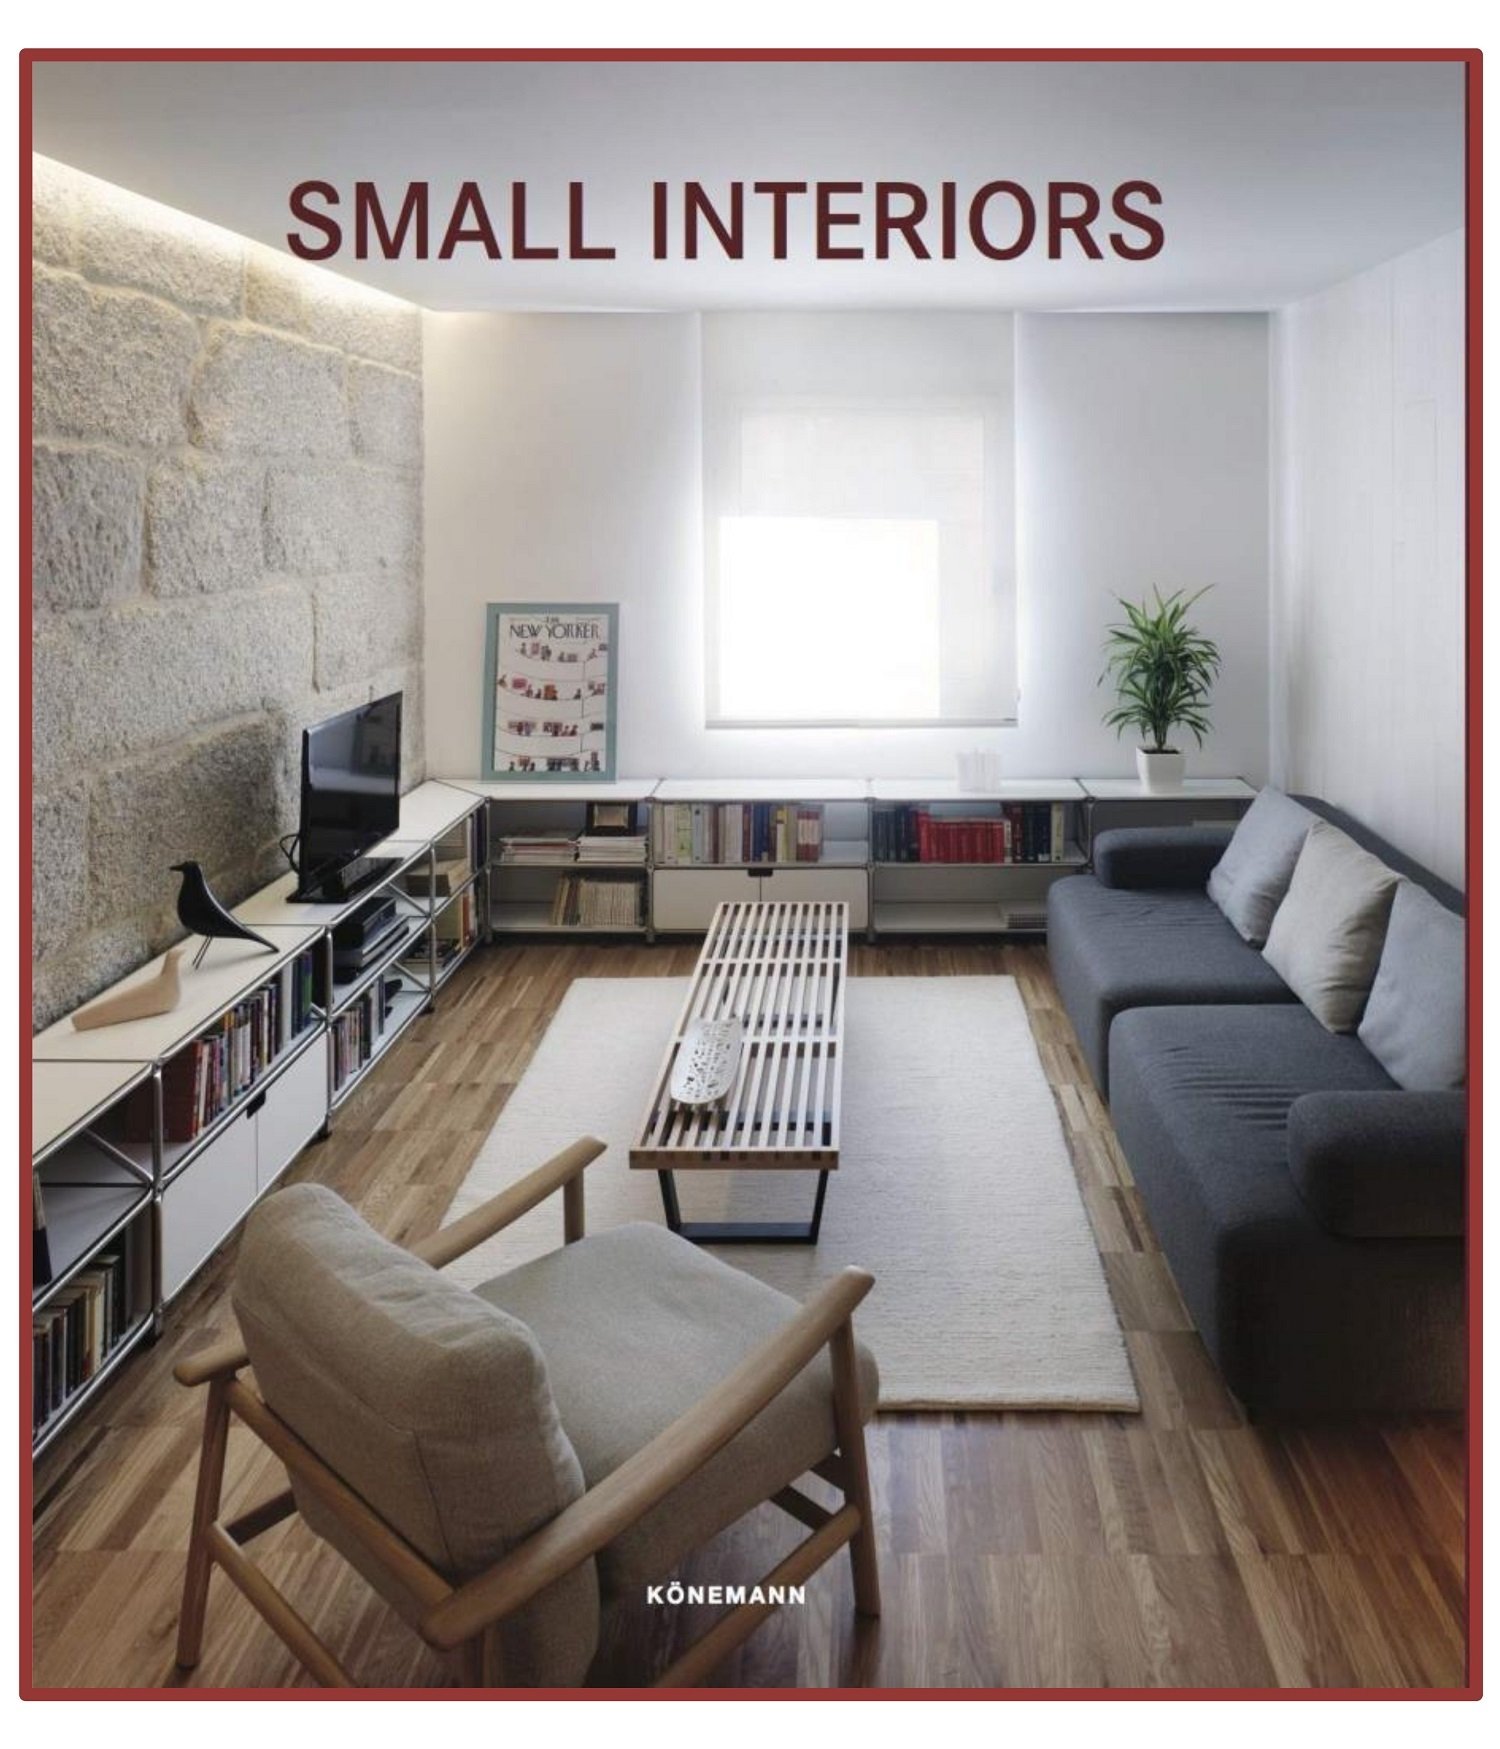 Small Interiors (Contemporary Architecture & Interiors)